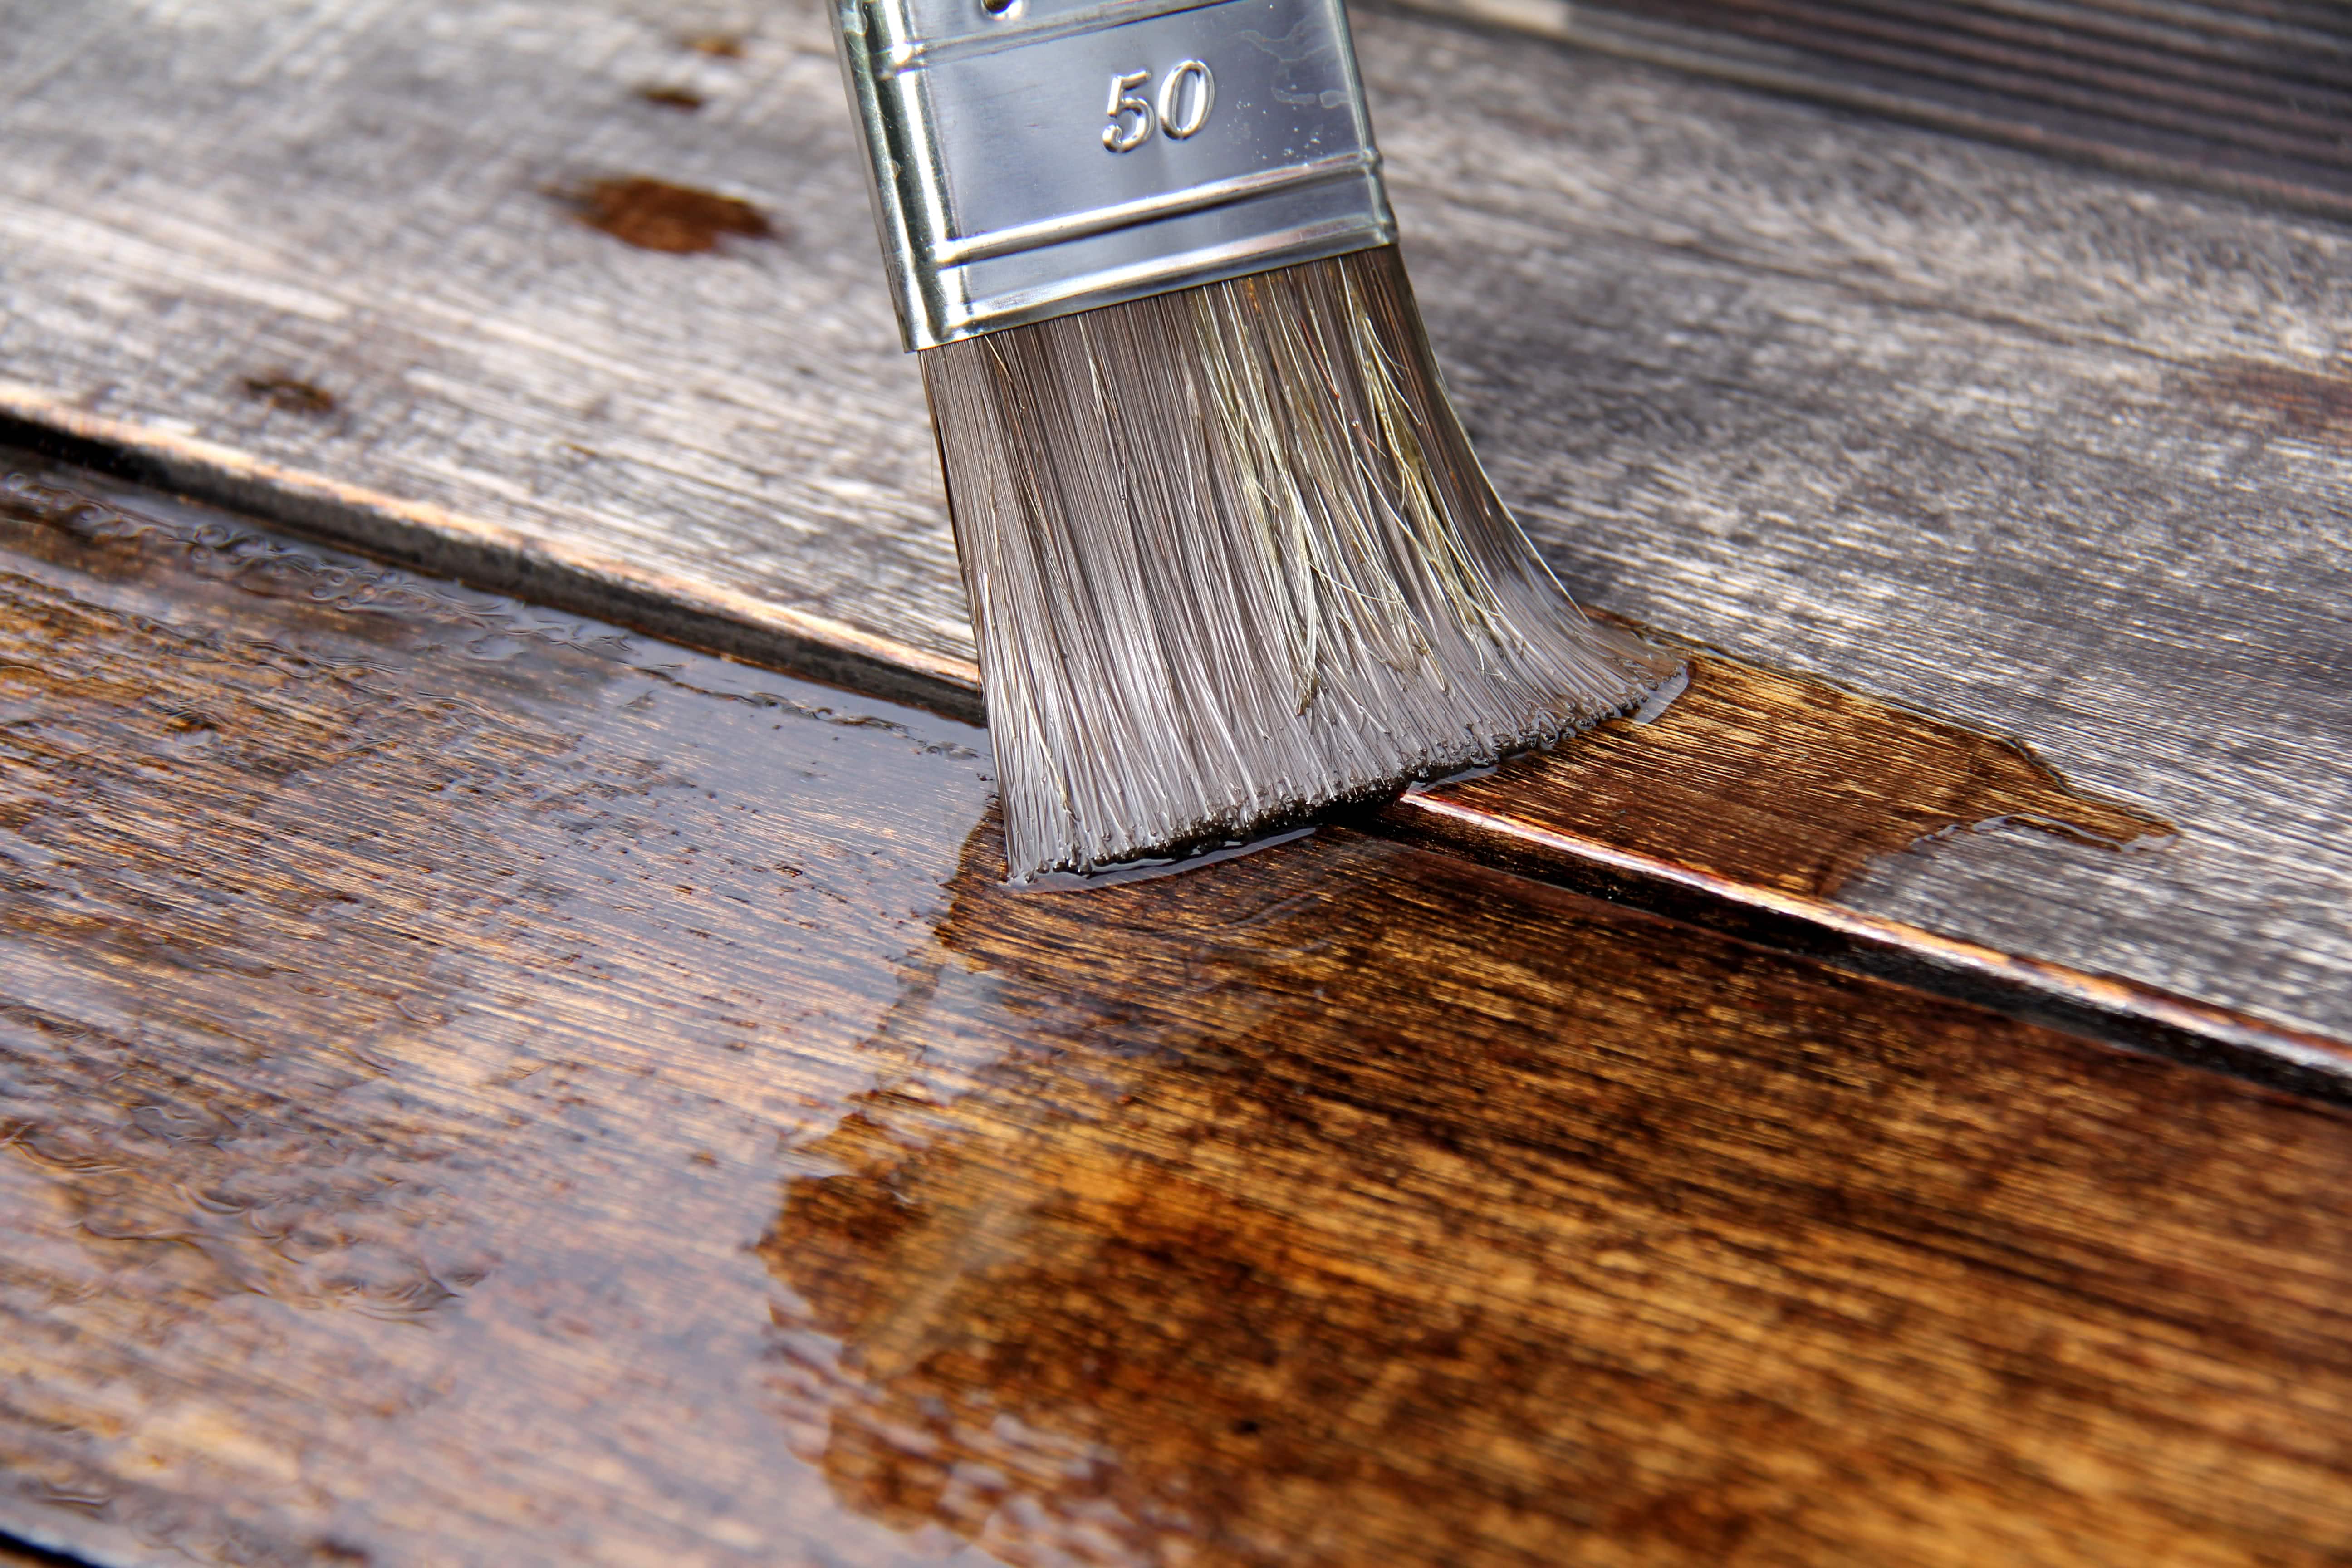 Holzschutz Im Aussenbereich Tipps Tricks Malerversand Ratgeber